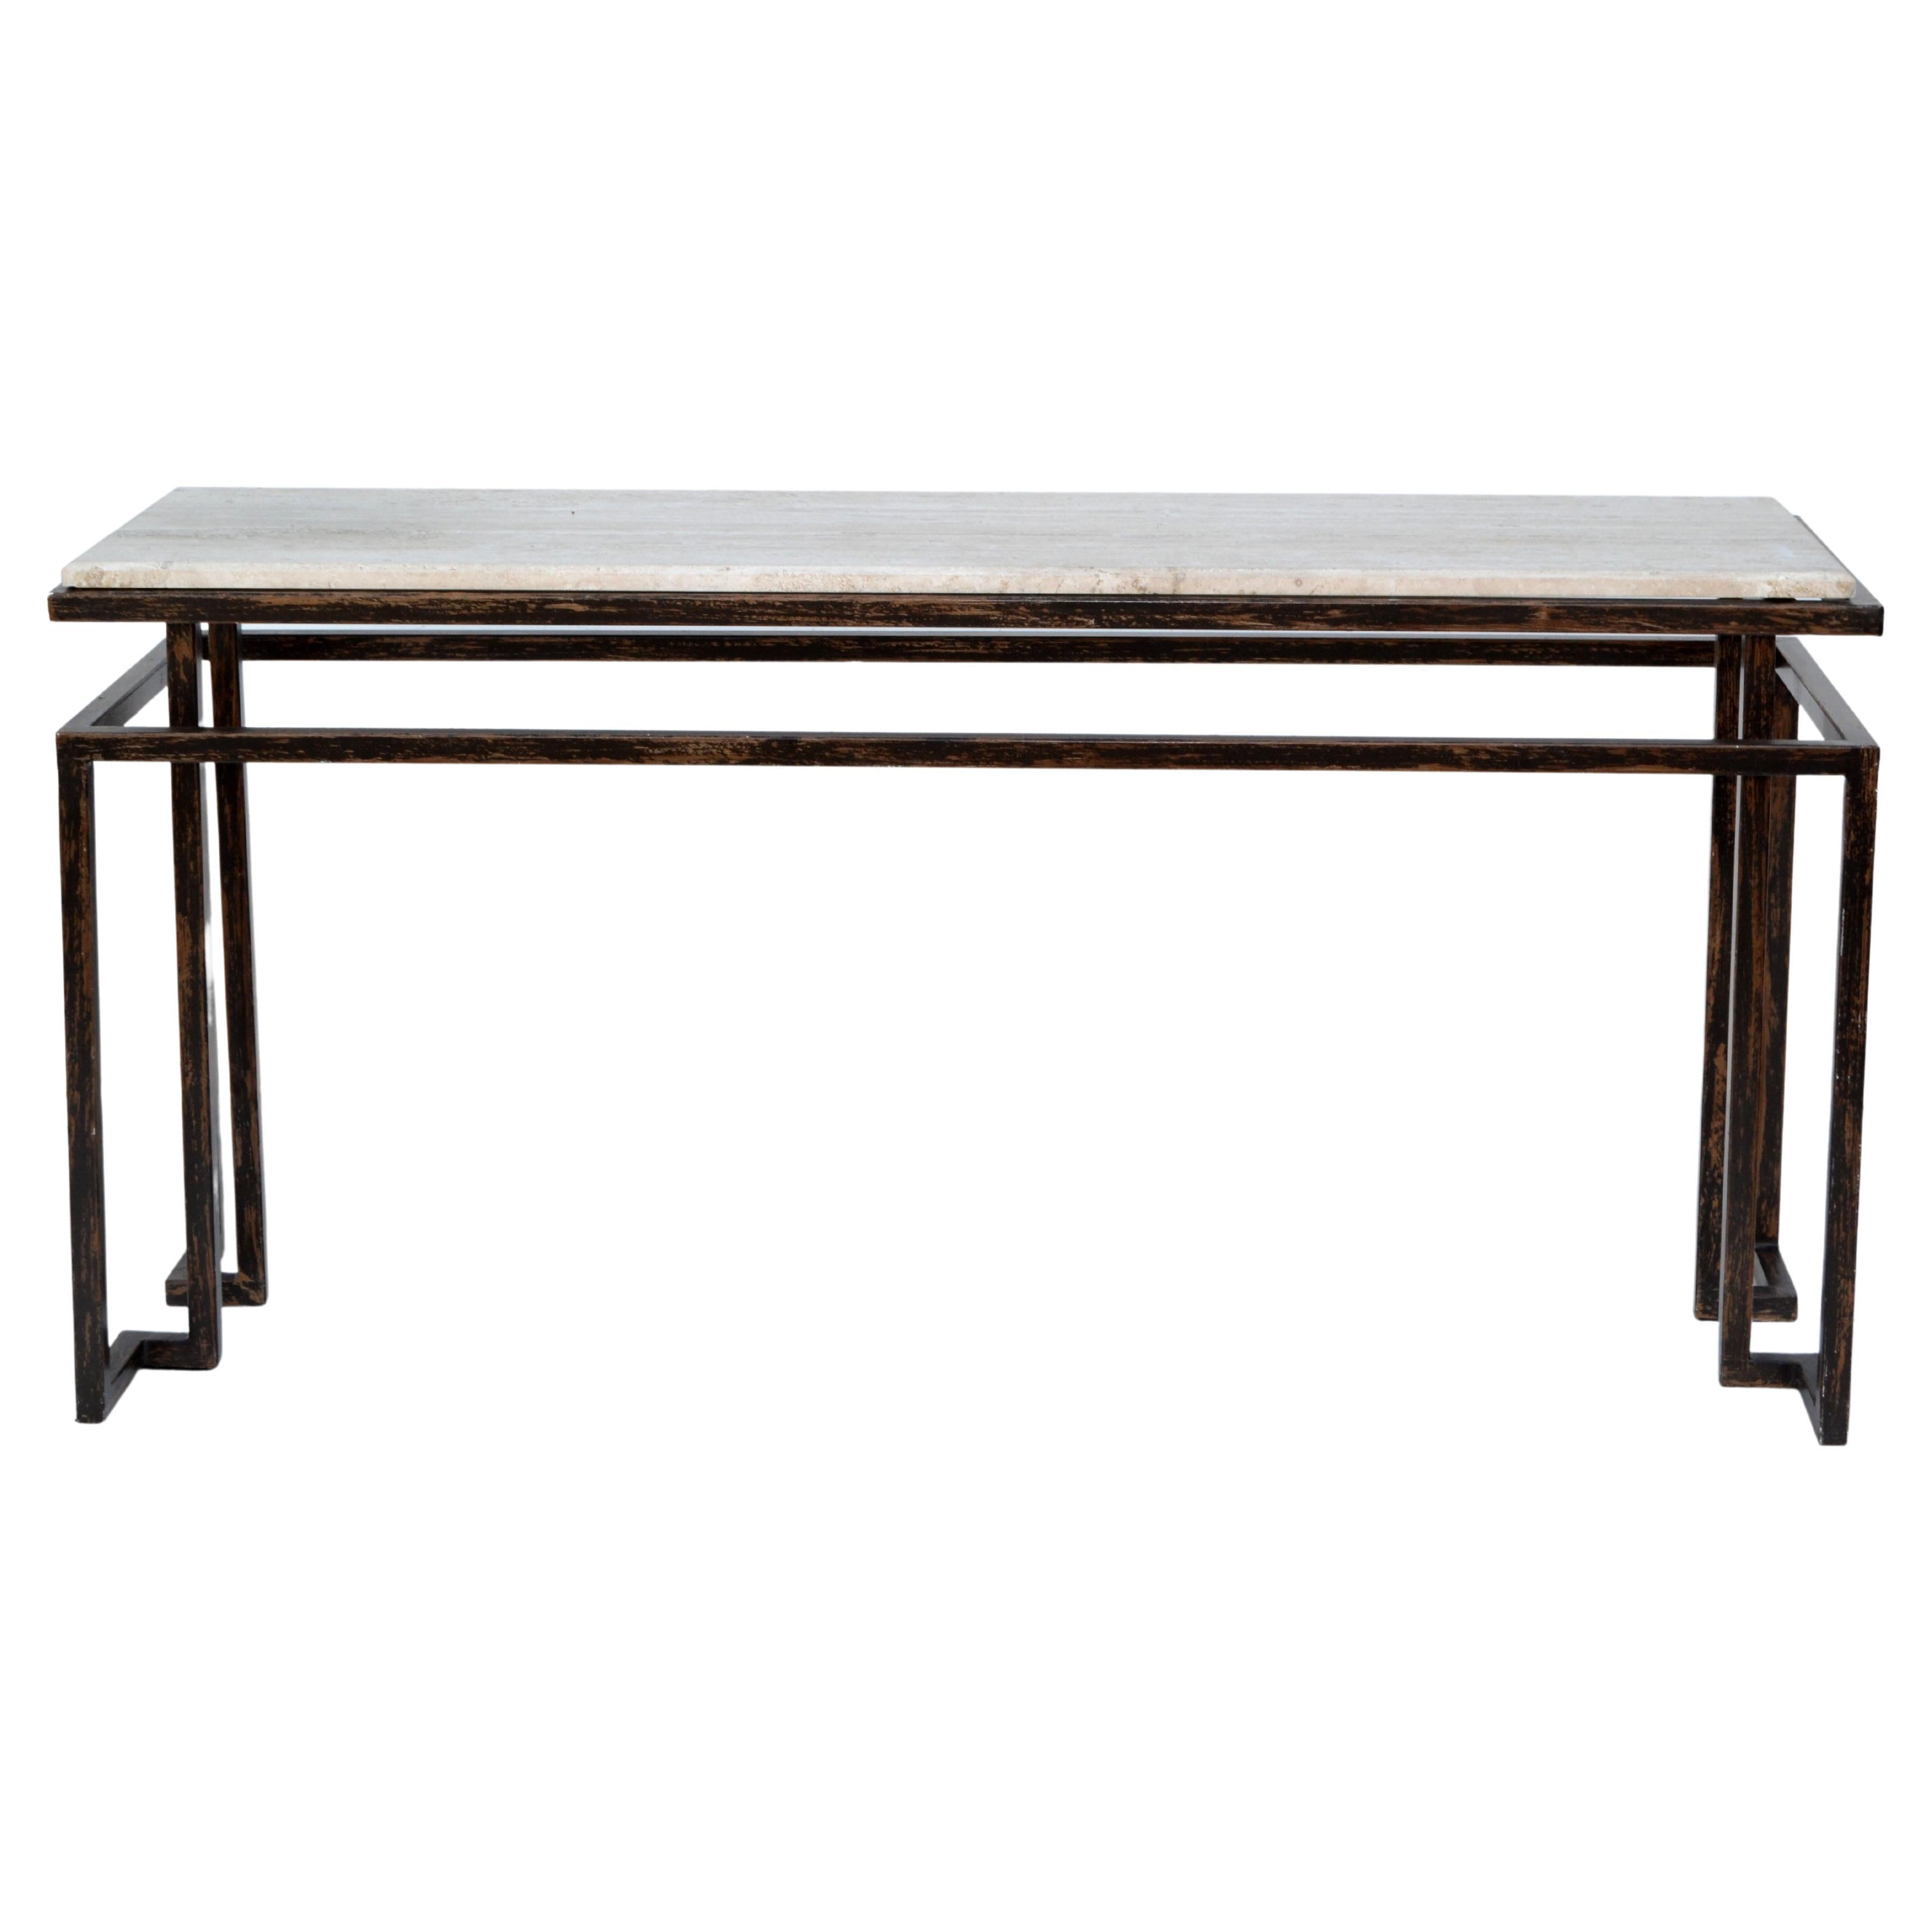 Roche Bobois Table console minimaliste en acier avec plateau flottant en travertin.
L'acier a une finition noire et bronze et le plateau en travertin beige est biseauté.
En parfait état d'origine, avec quelques marques blanches sur le cadre en